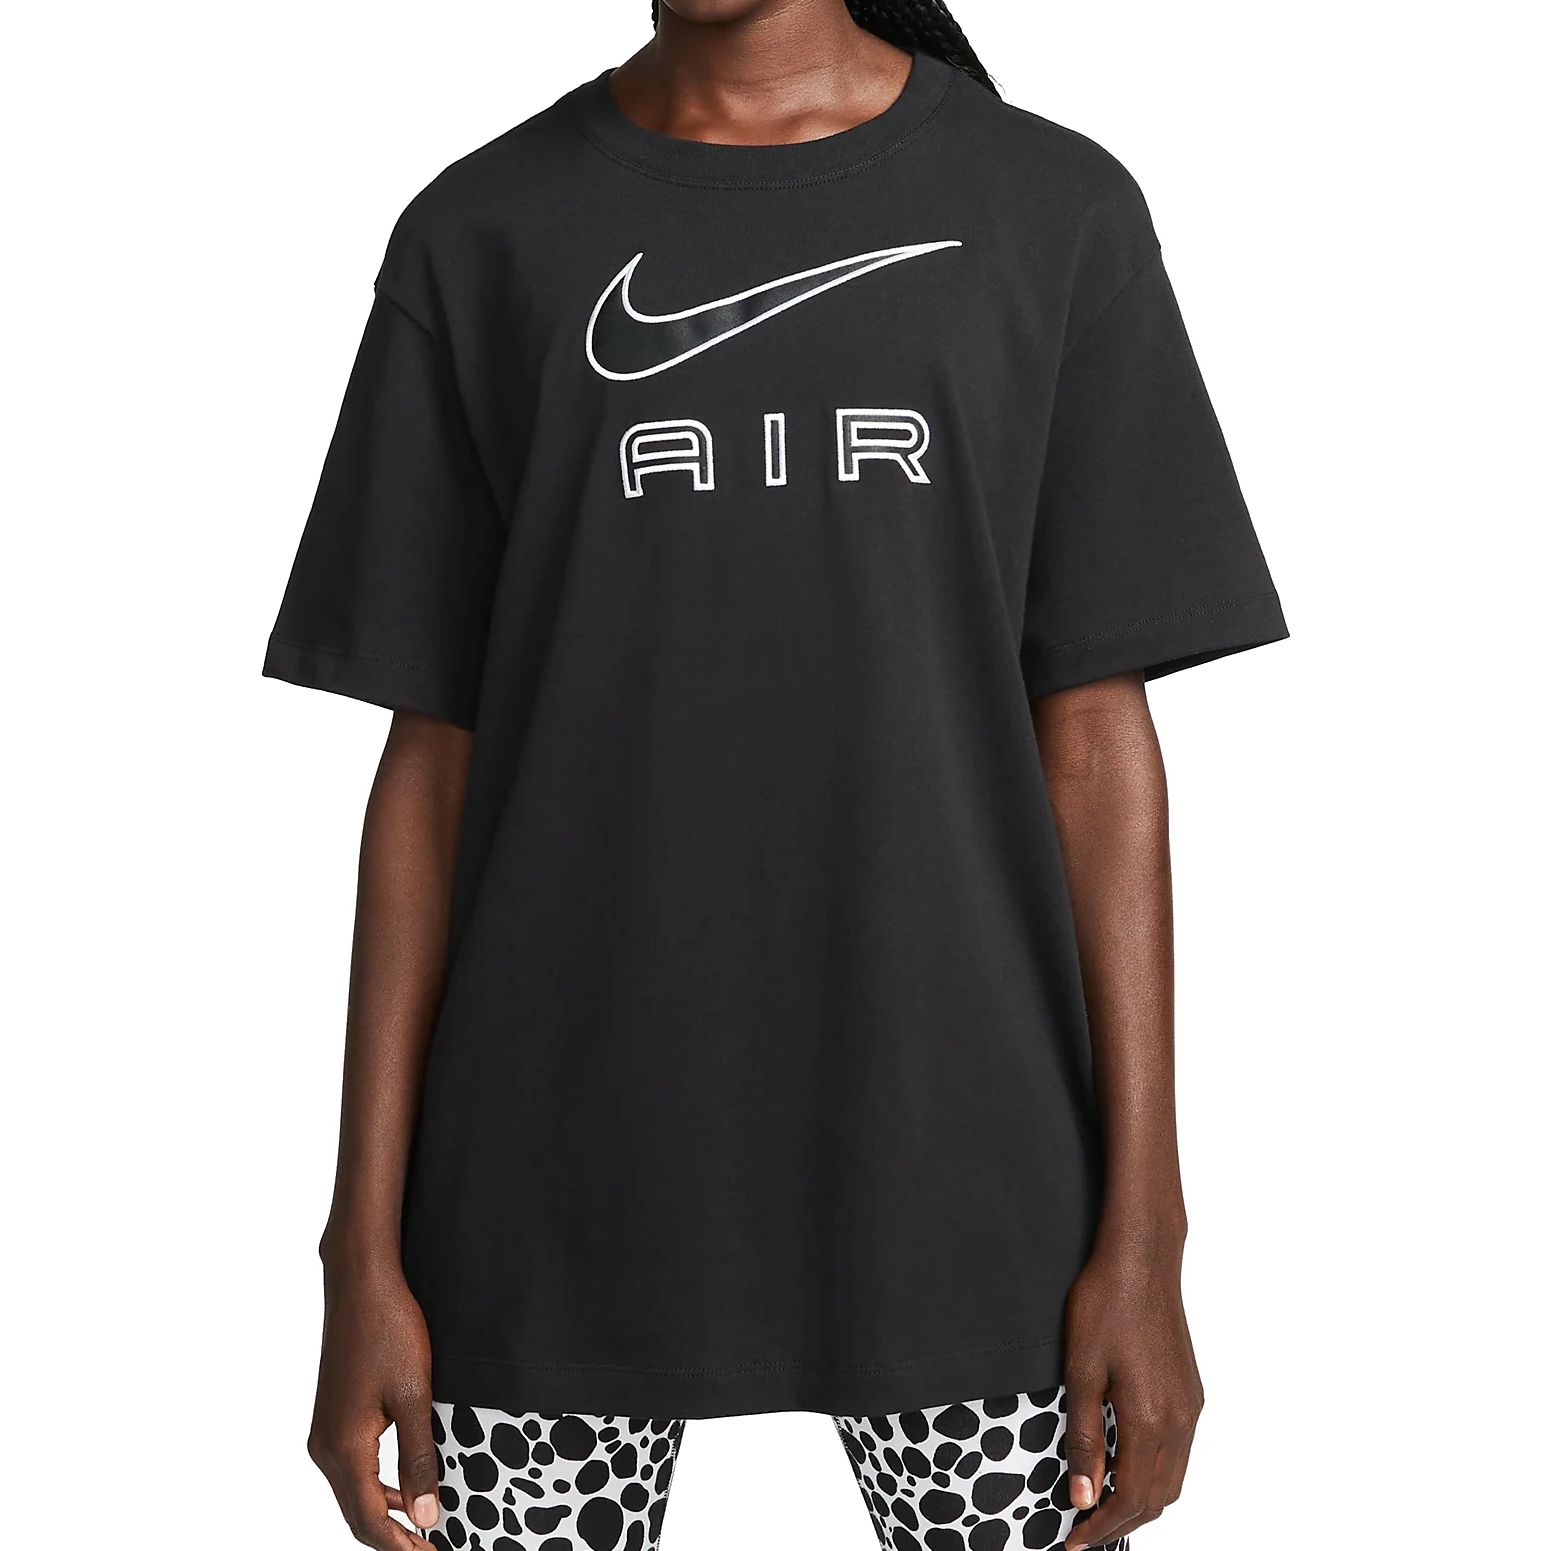 Produktbild von Nike Air T-Shirt Damen - schwarz/weiß DR8982-010